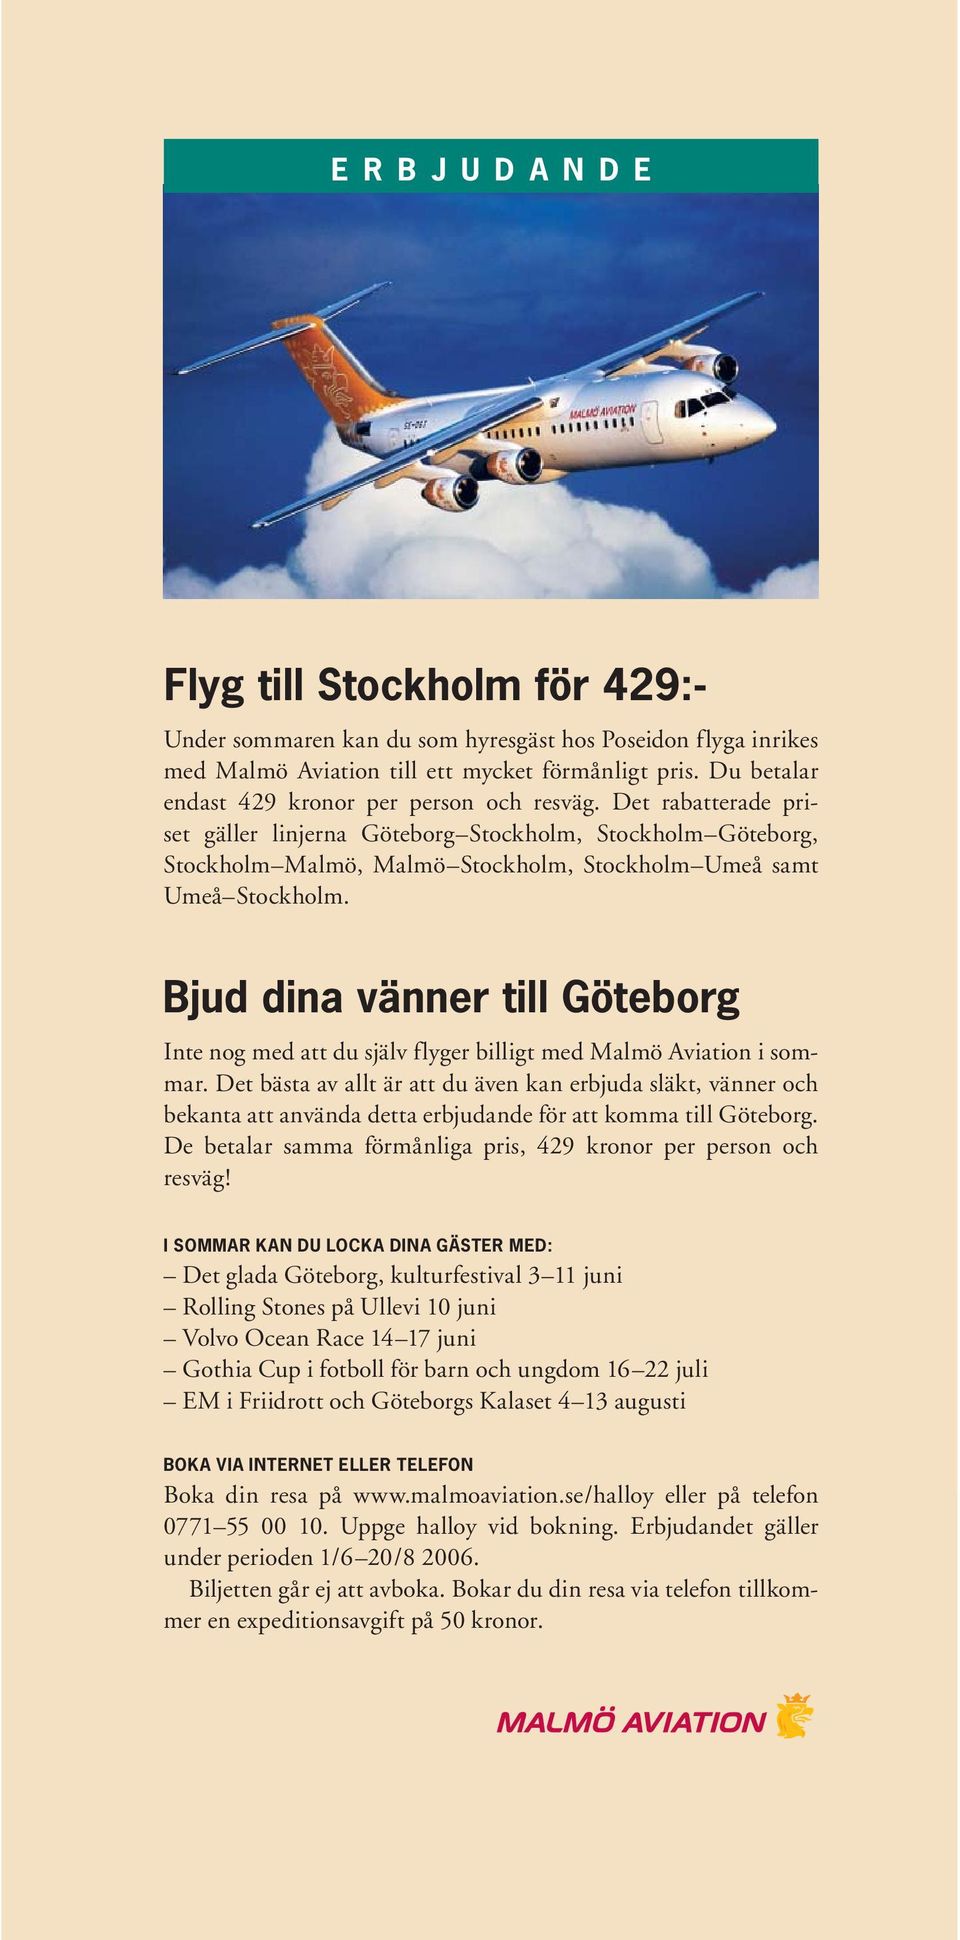 Bjud dina vänner till Göteborg Inte nog med att du själv flyger billigt med Malmö Aviation i sommar.